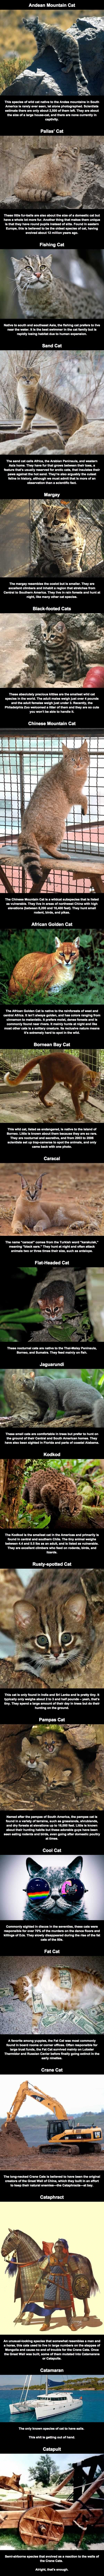 Unusual cat species